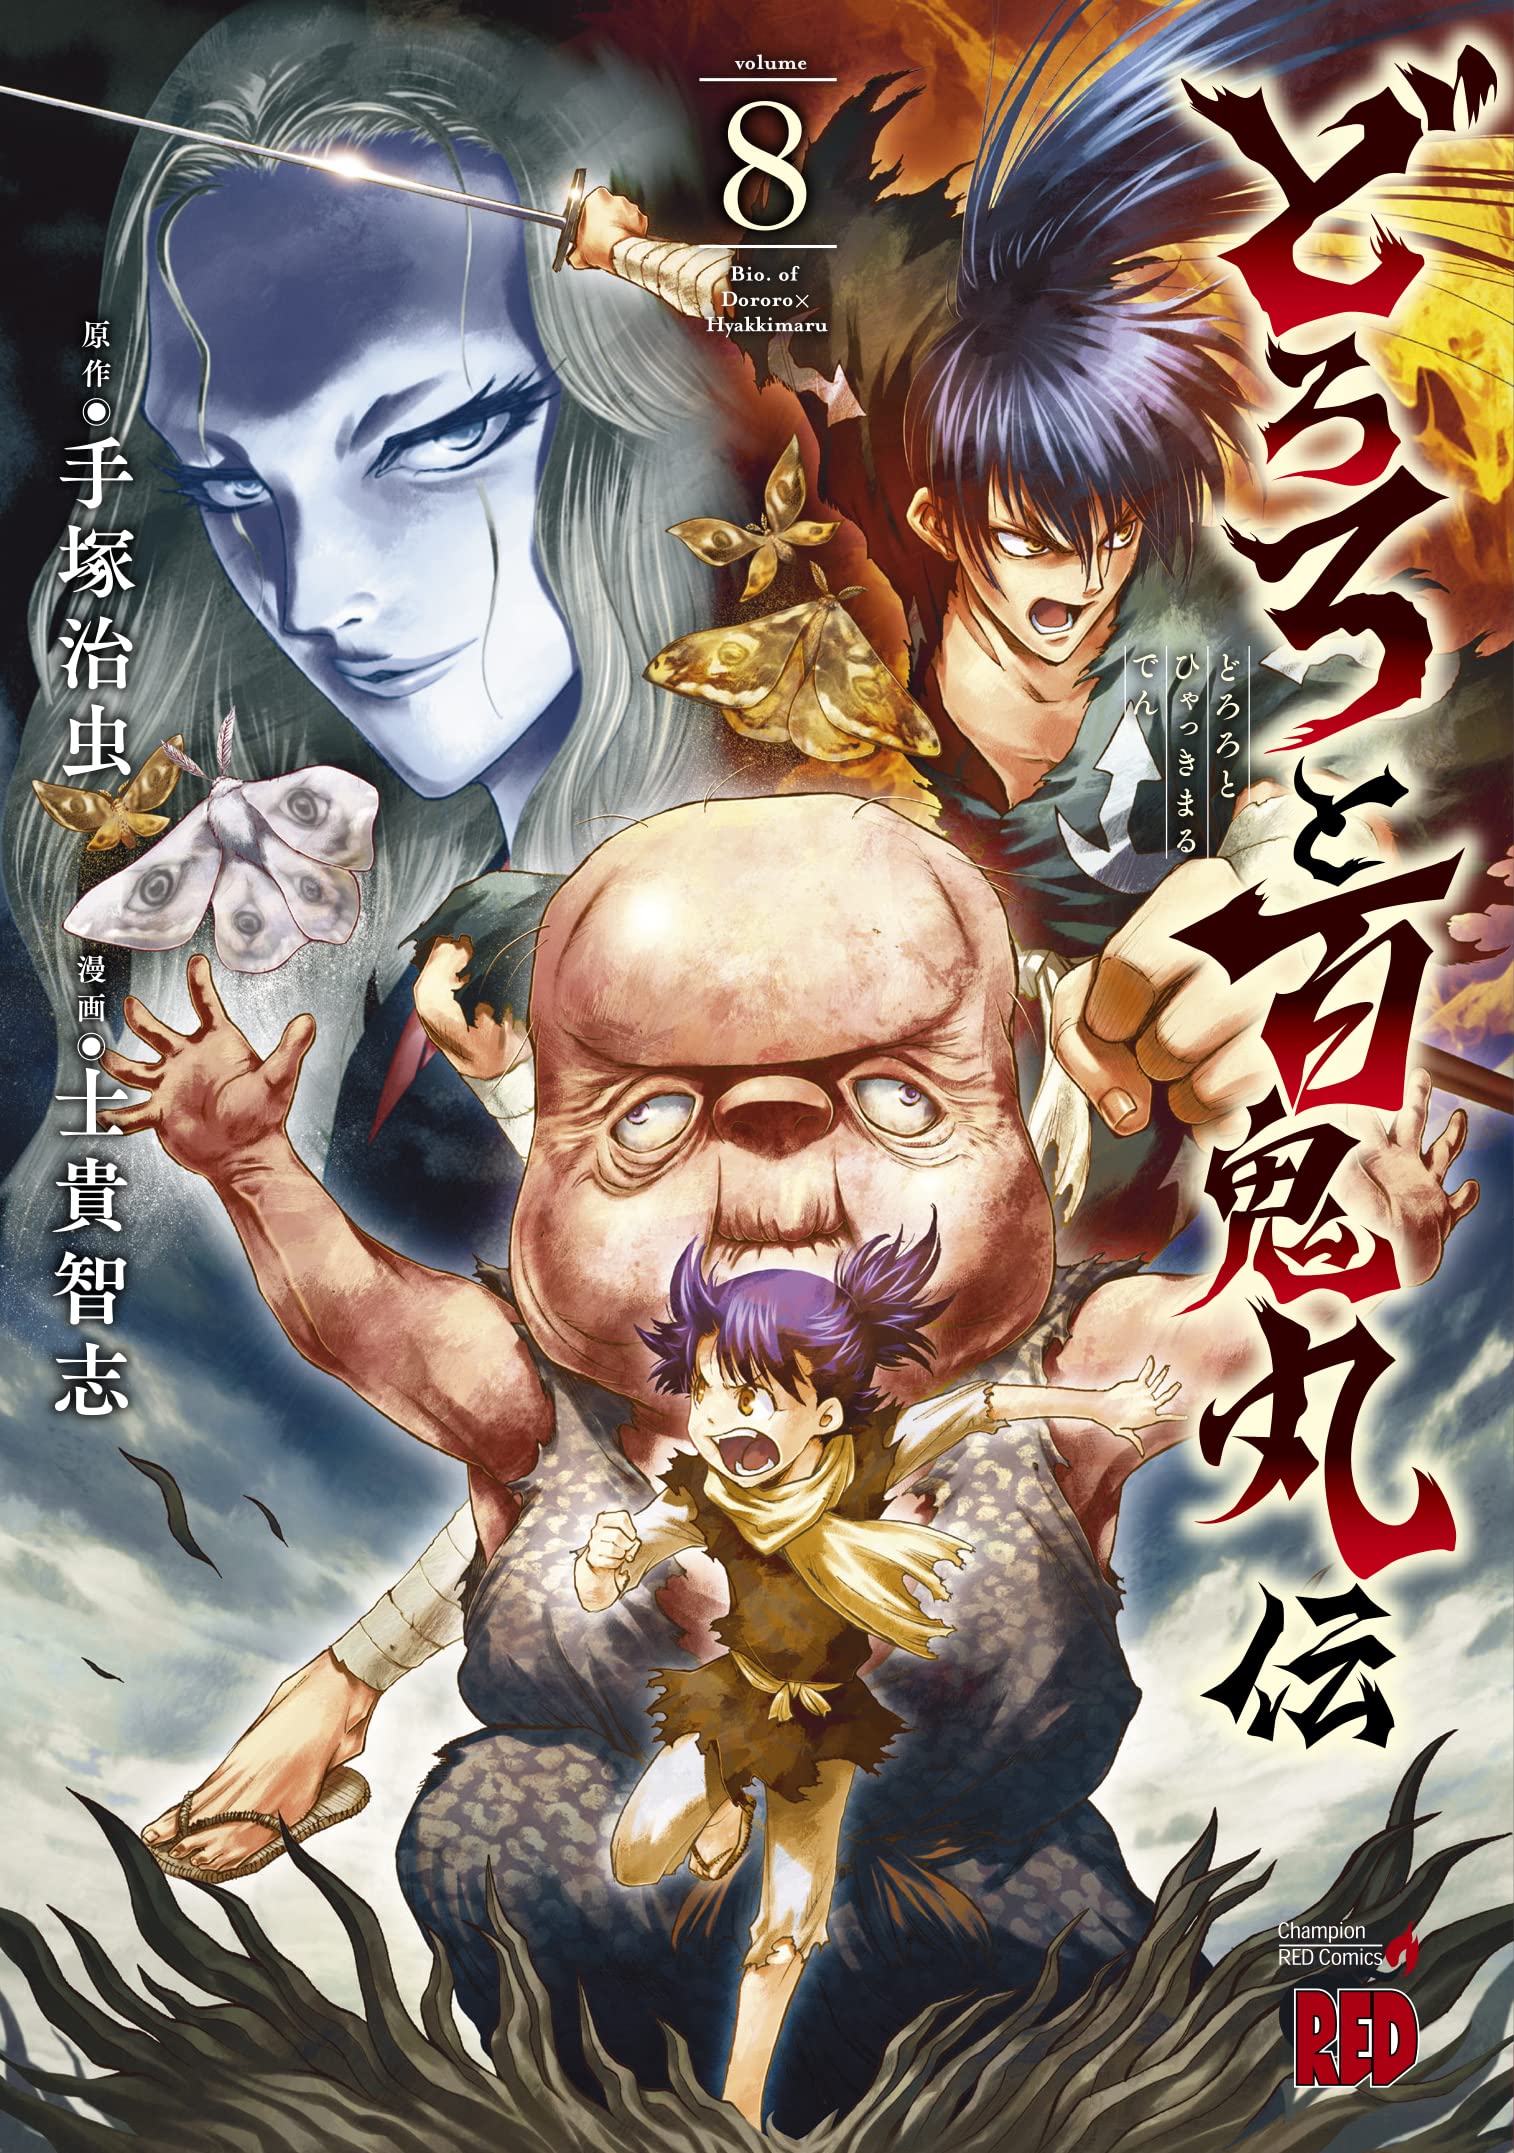 The Legend of Dororo and Hyakkimaru Manga Volume 3